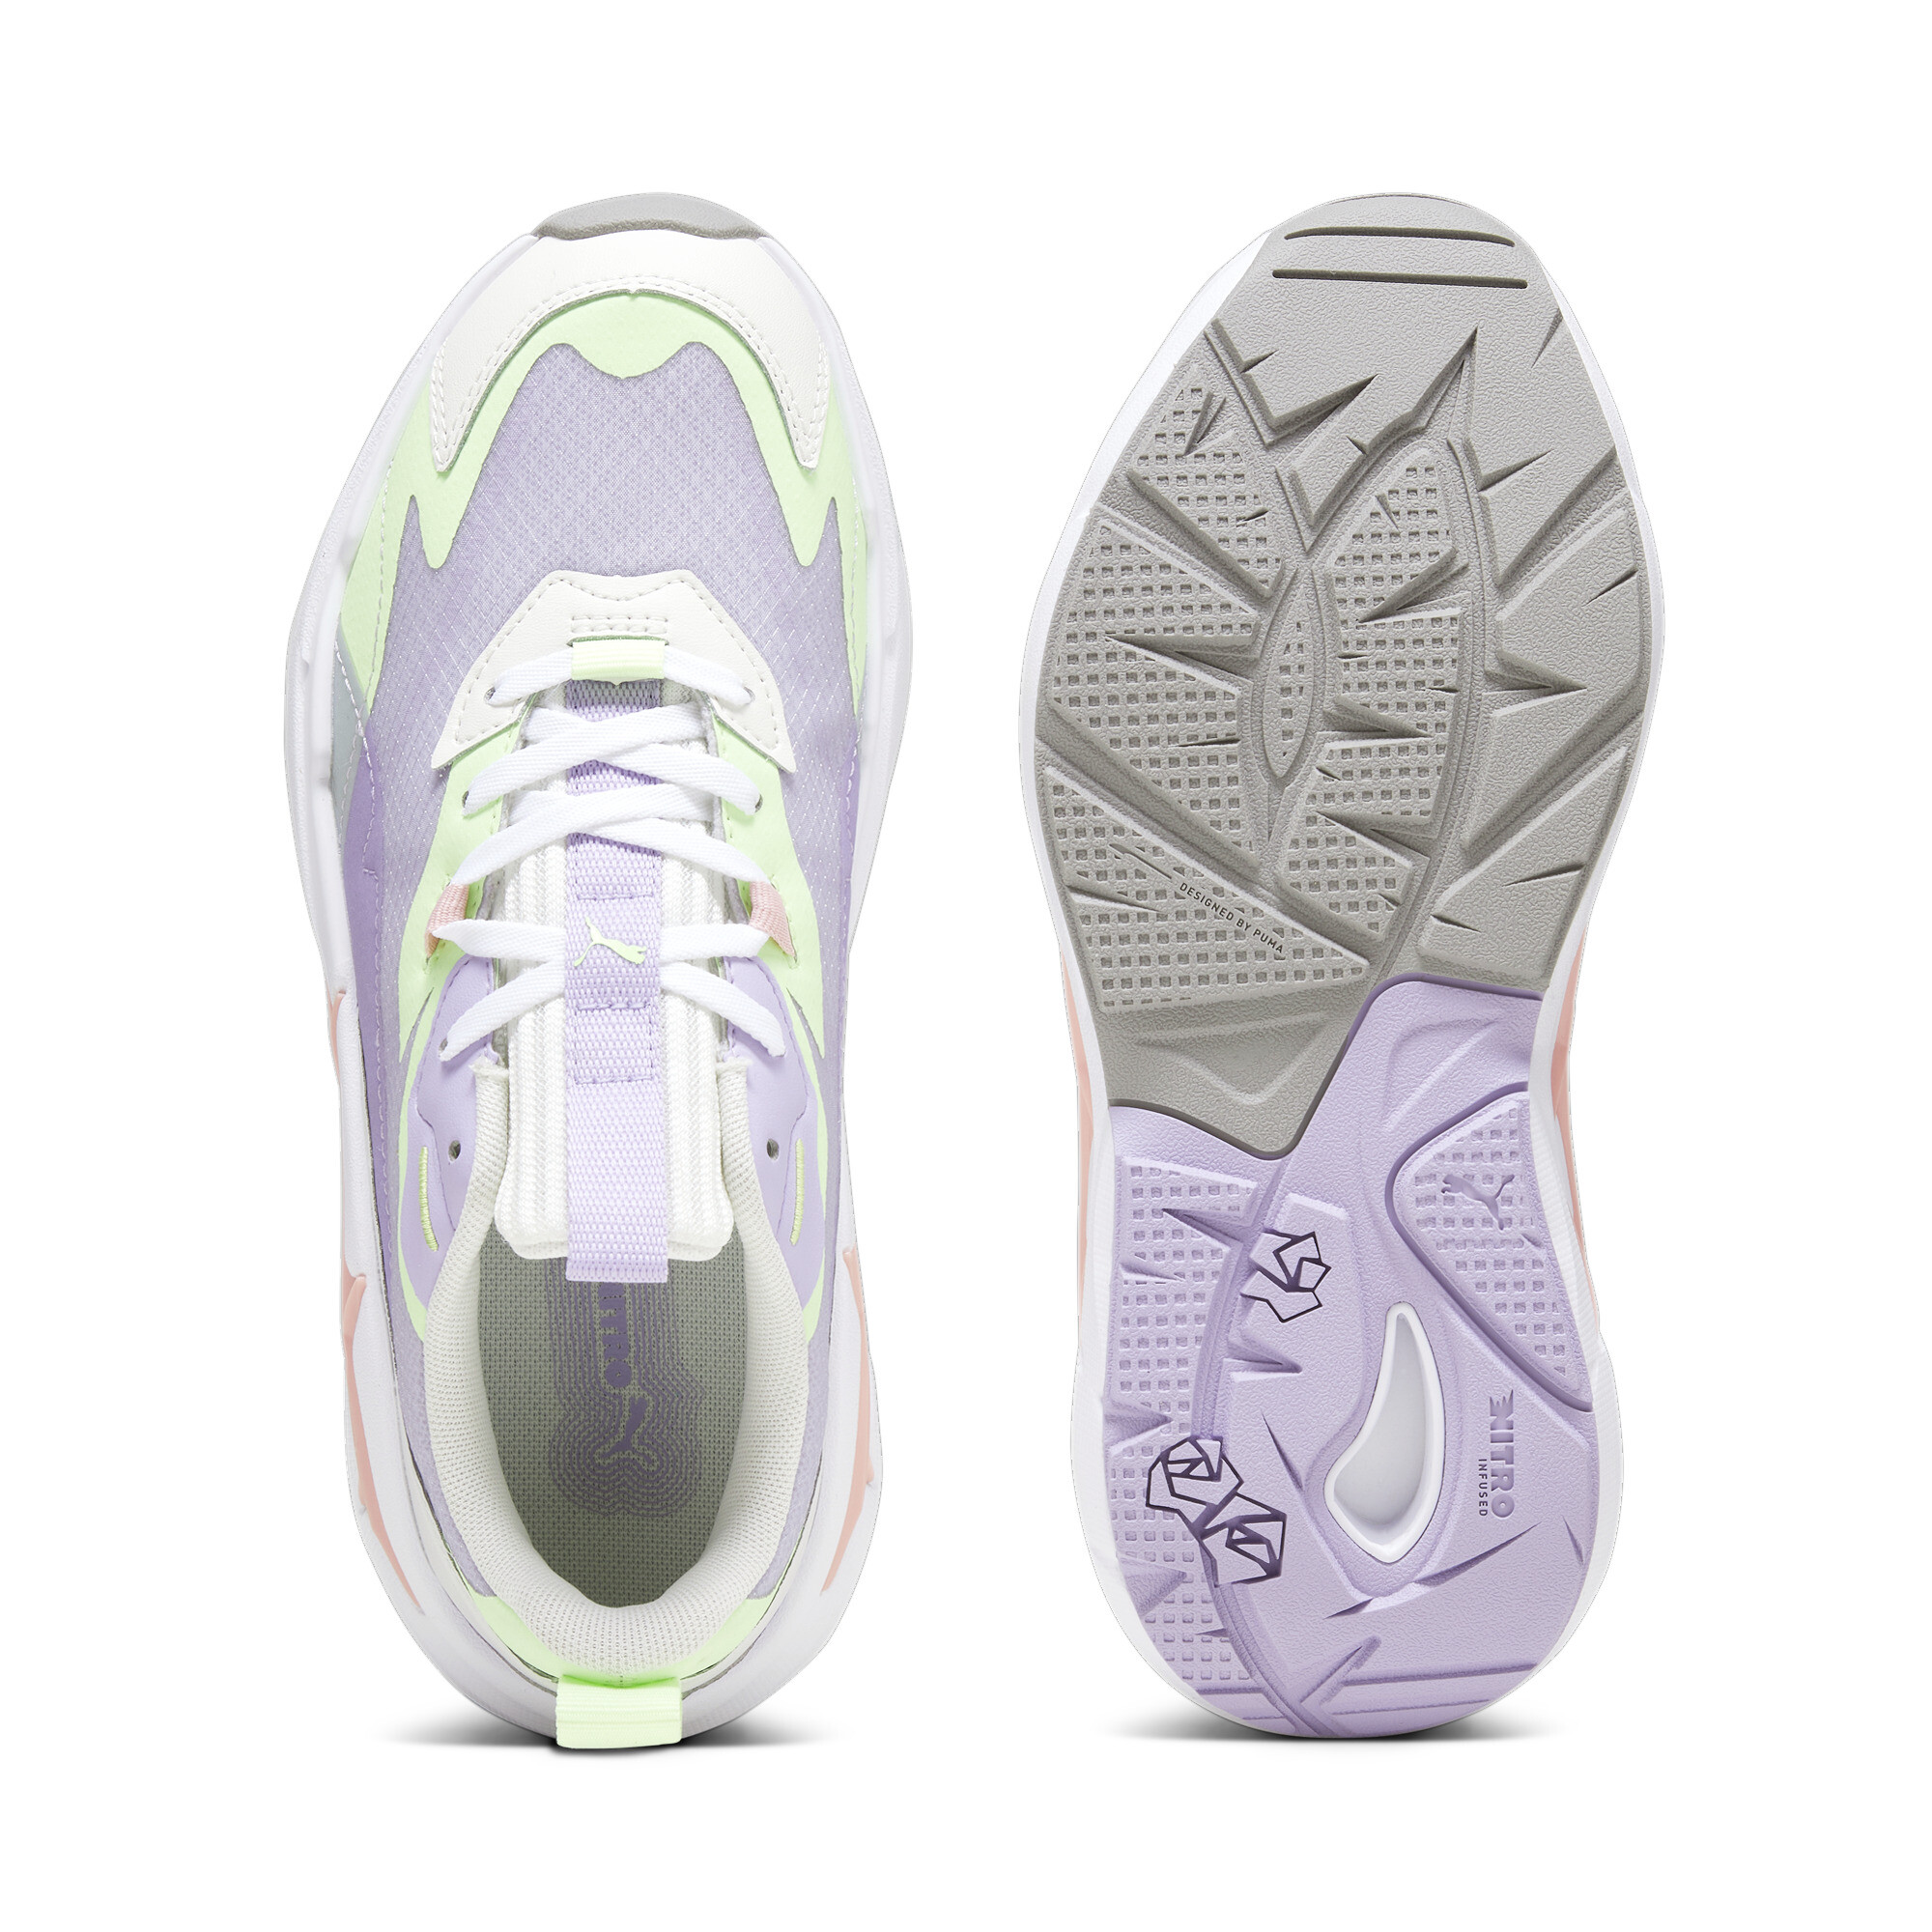 Women's PUMA Spina Nitro Sneakers In Purple, Size EU 35.5